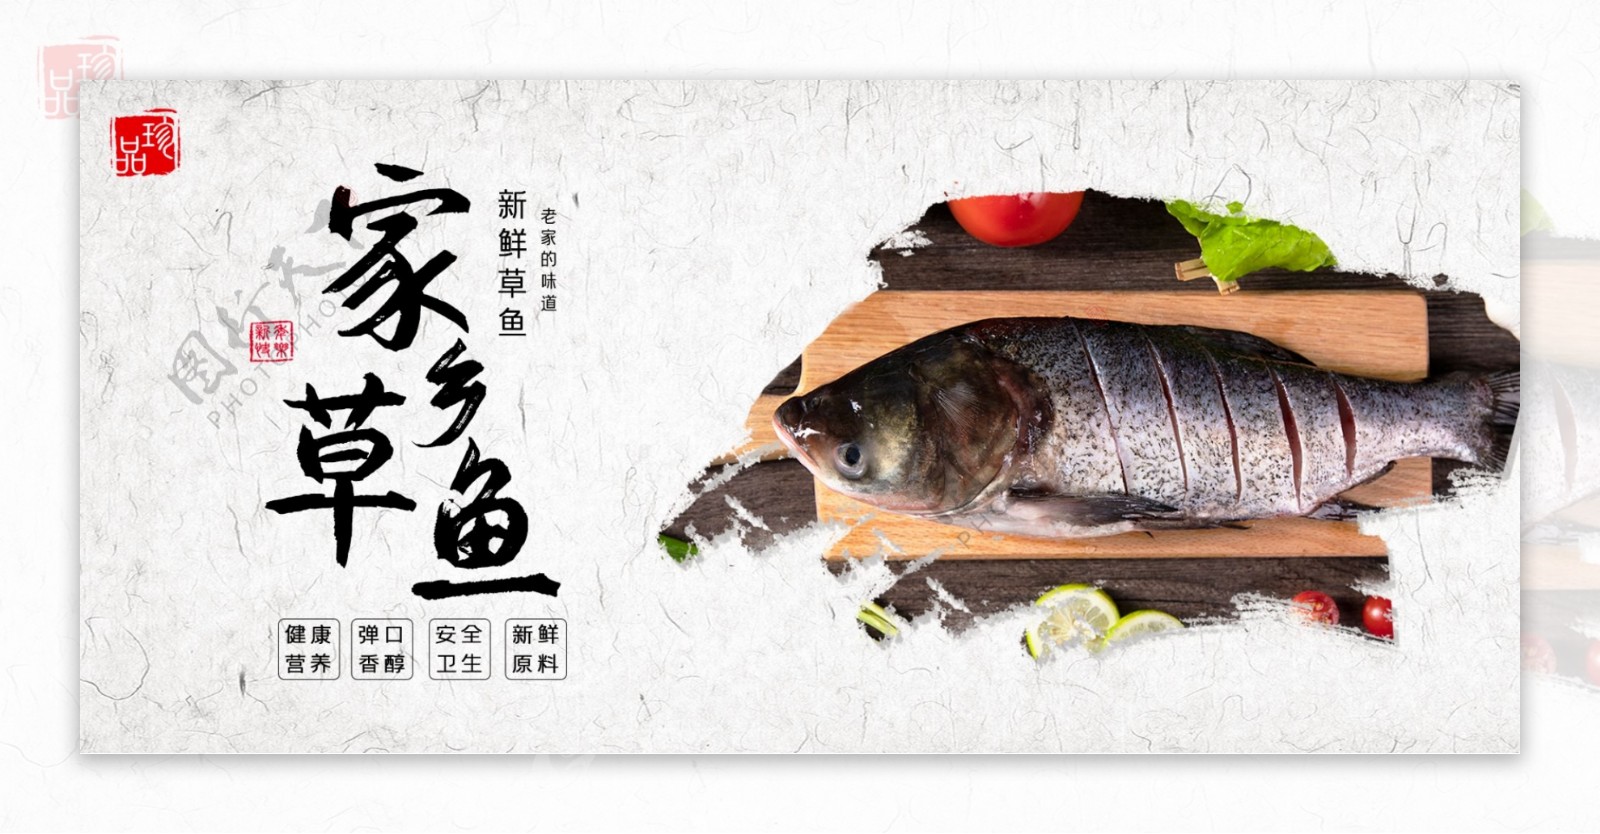 草鱼食品美味新鲜鱼类生鲜海报banner